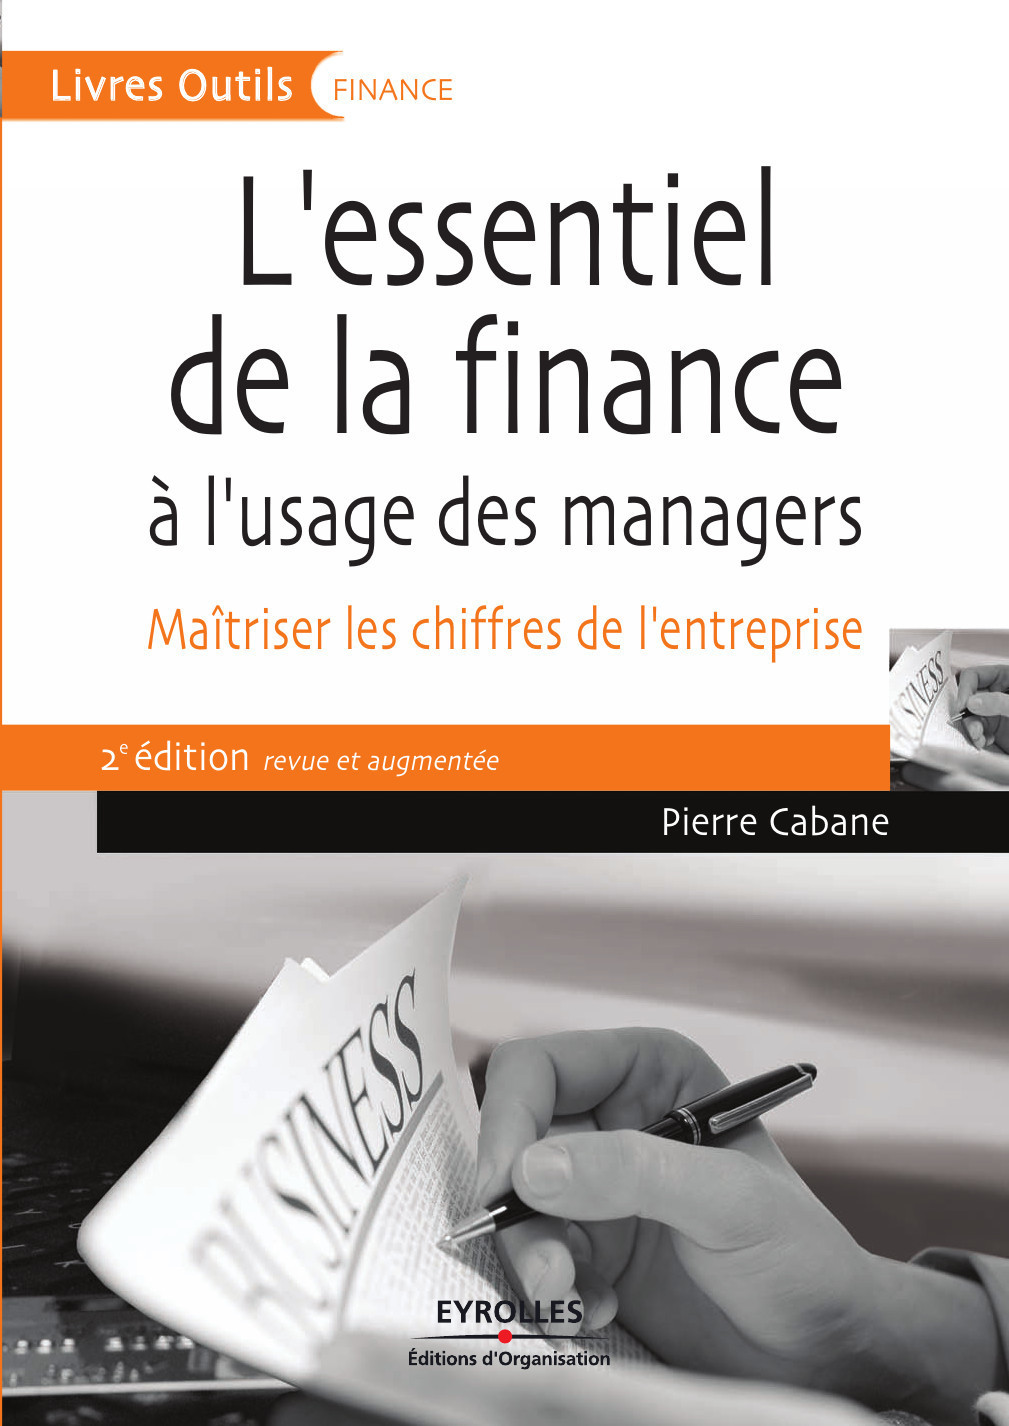 L’essentiel de la finance PDF de Pierre Cabane